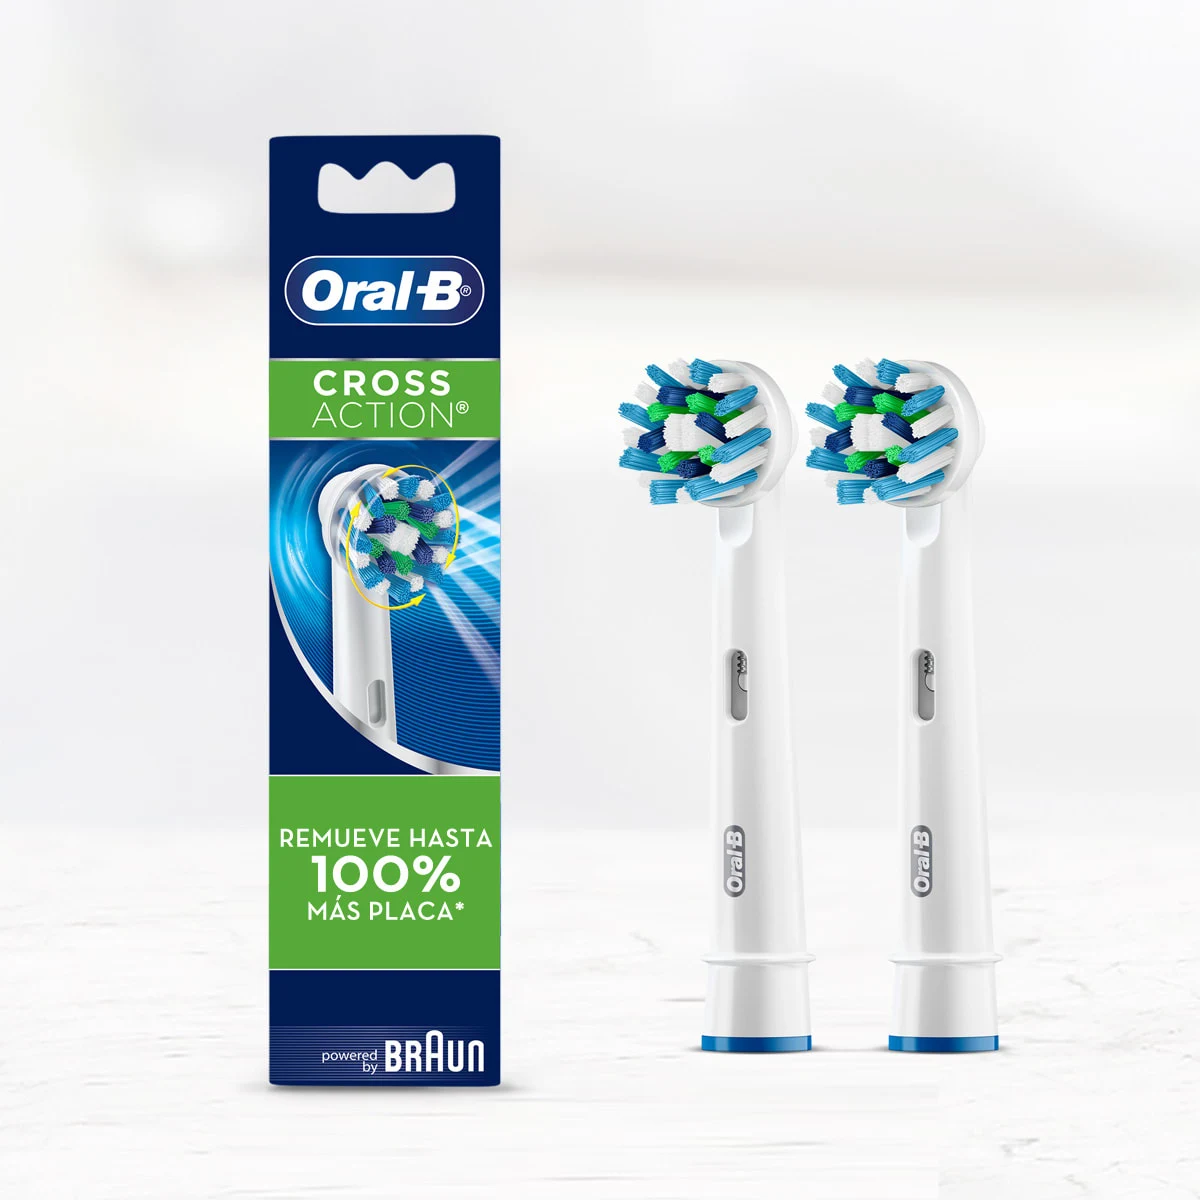  Cabezales de cepillo de repuesto compatibles Oral-B – Variedad  de 6 unidades genéricos, Cabezales de cepillo eléctrico con cerdas Dupont